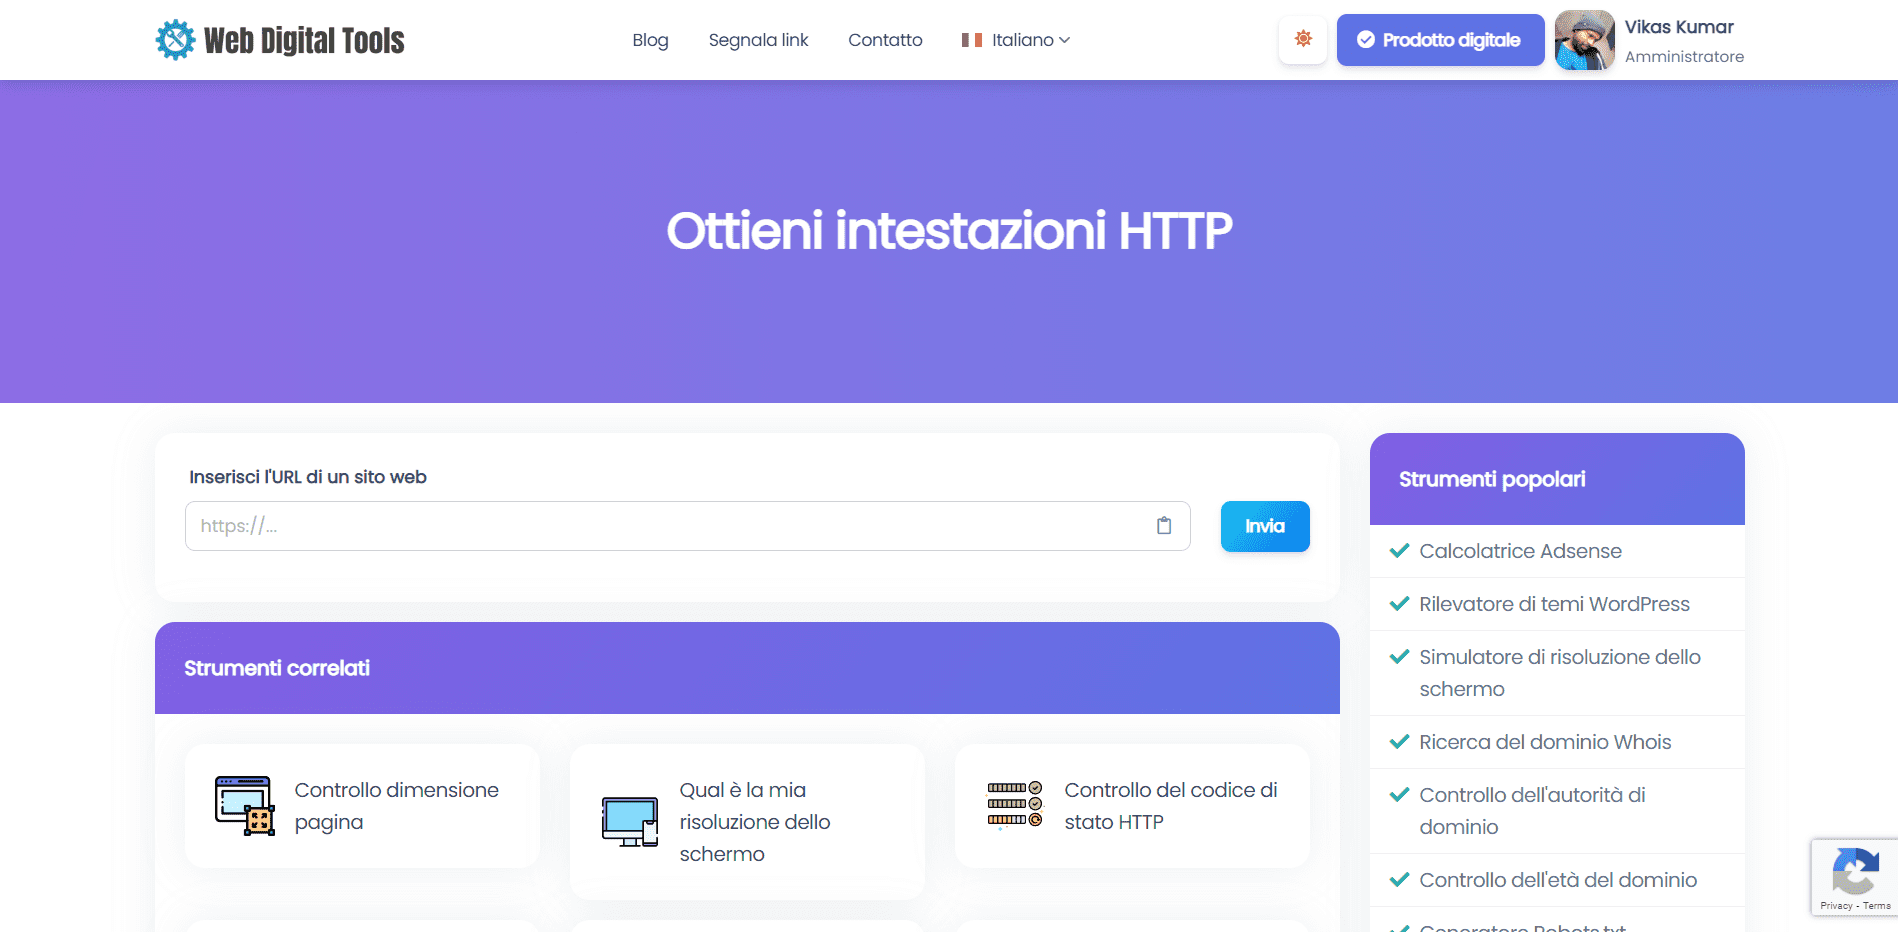 Ottieni intestazioni HTTP